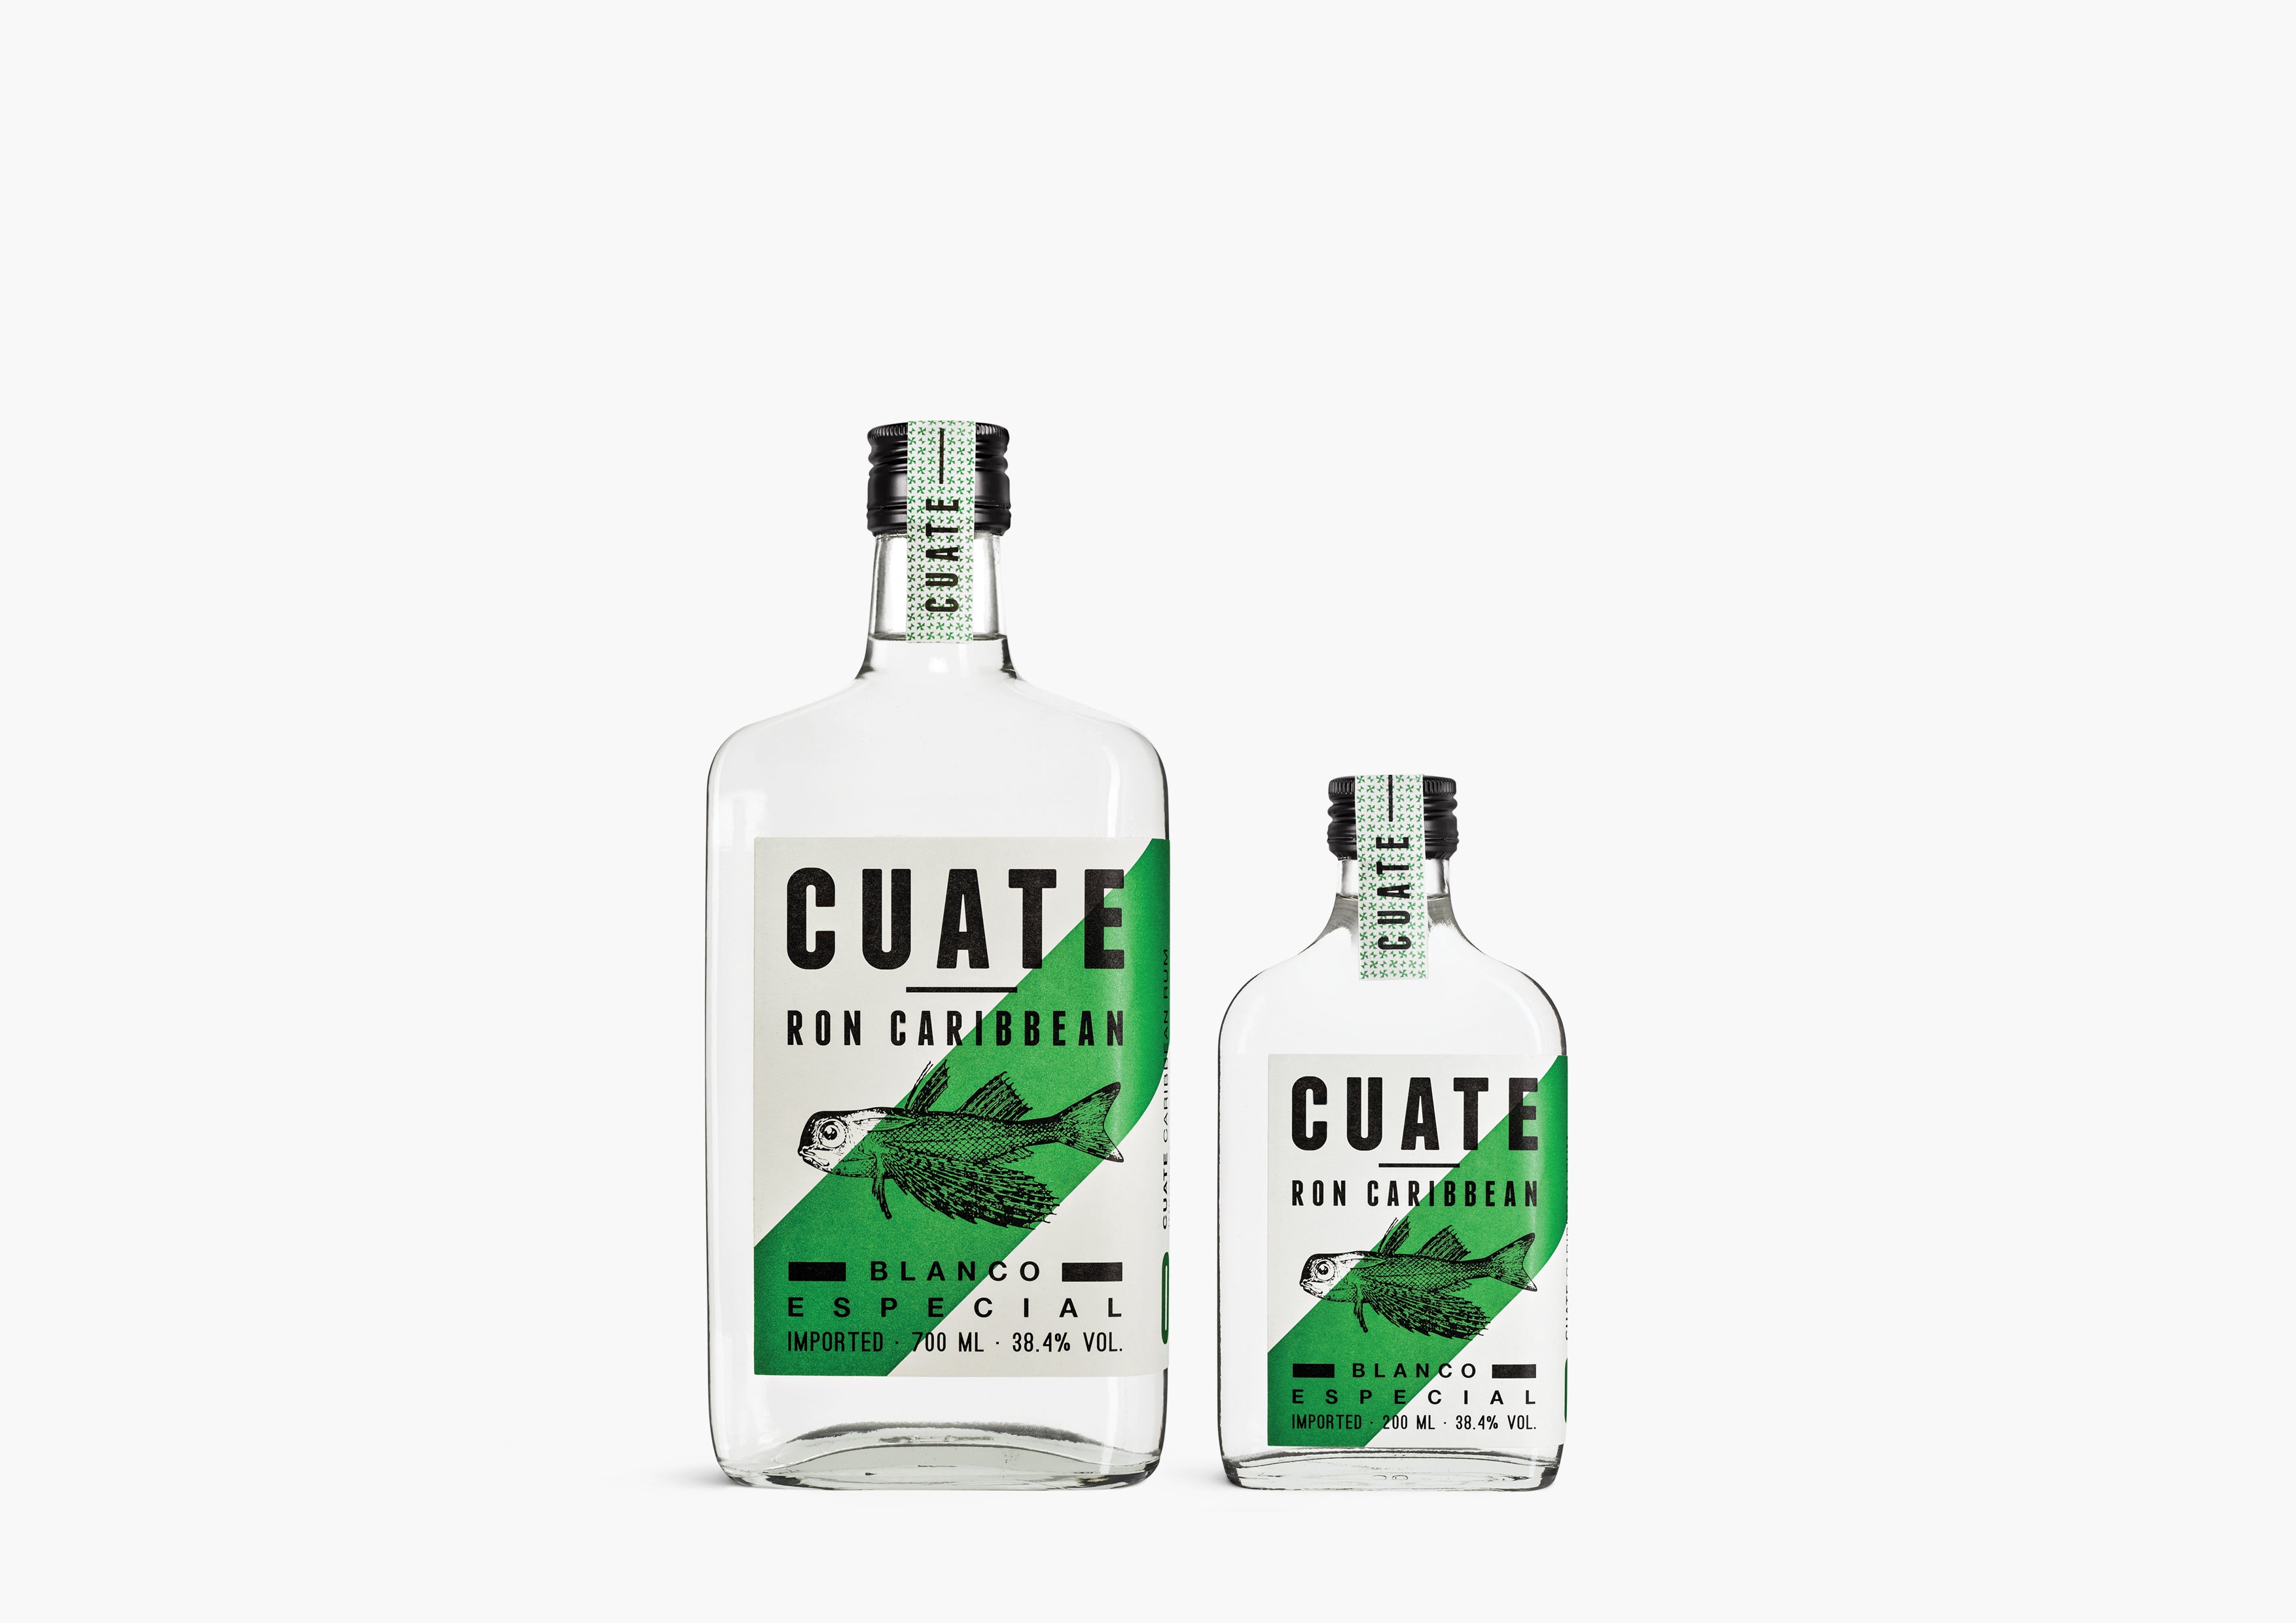 Cuate Rum 01 - Blanco Especial 200ml